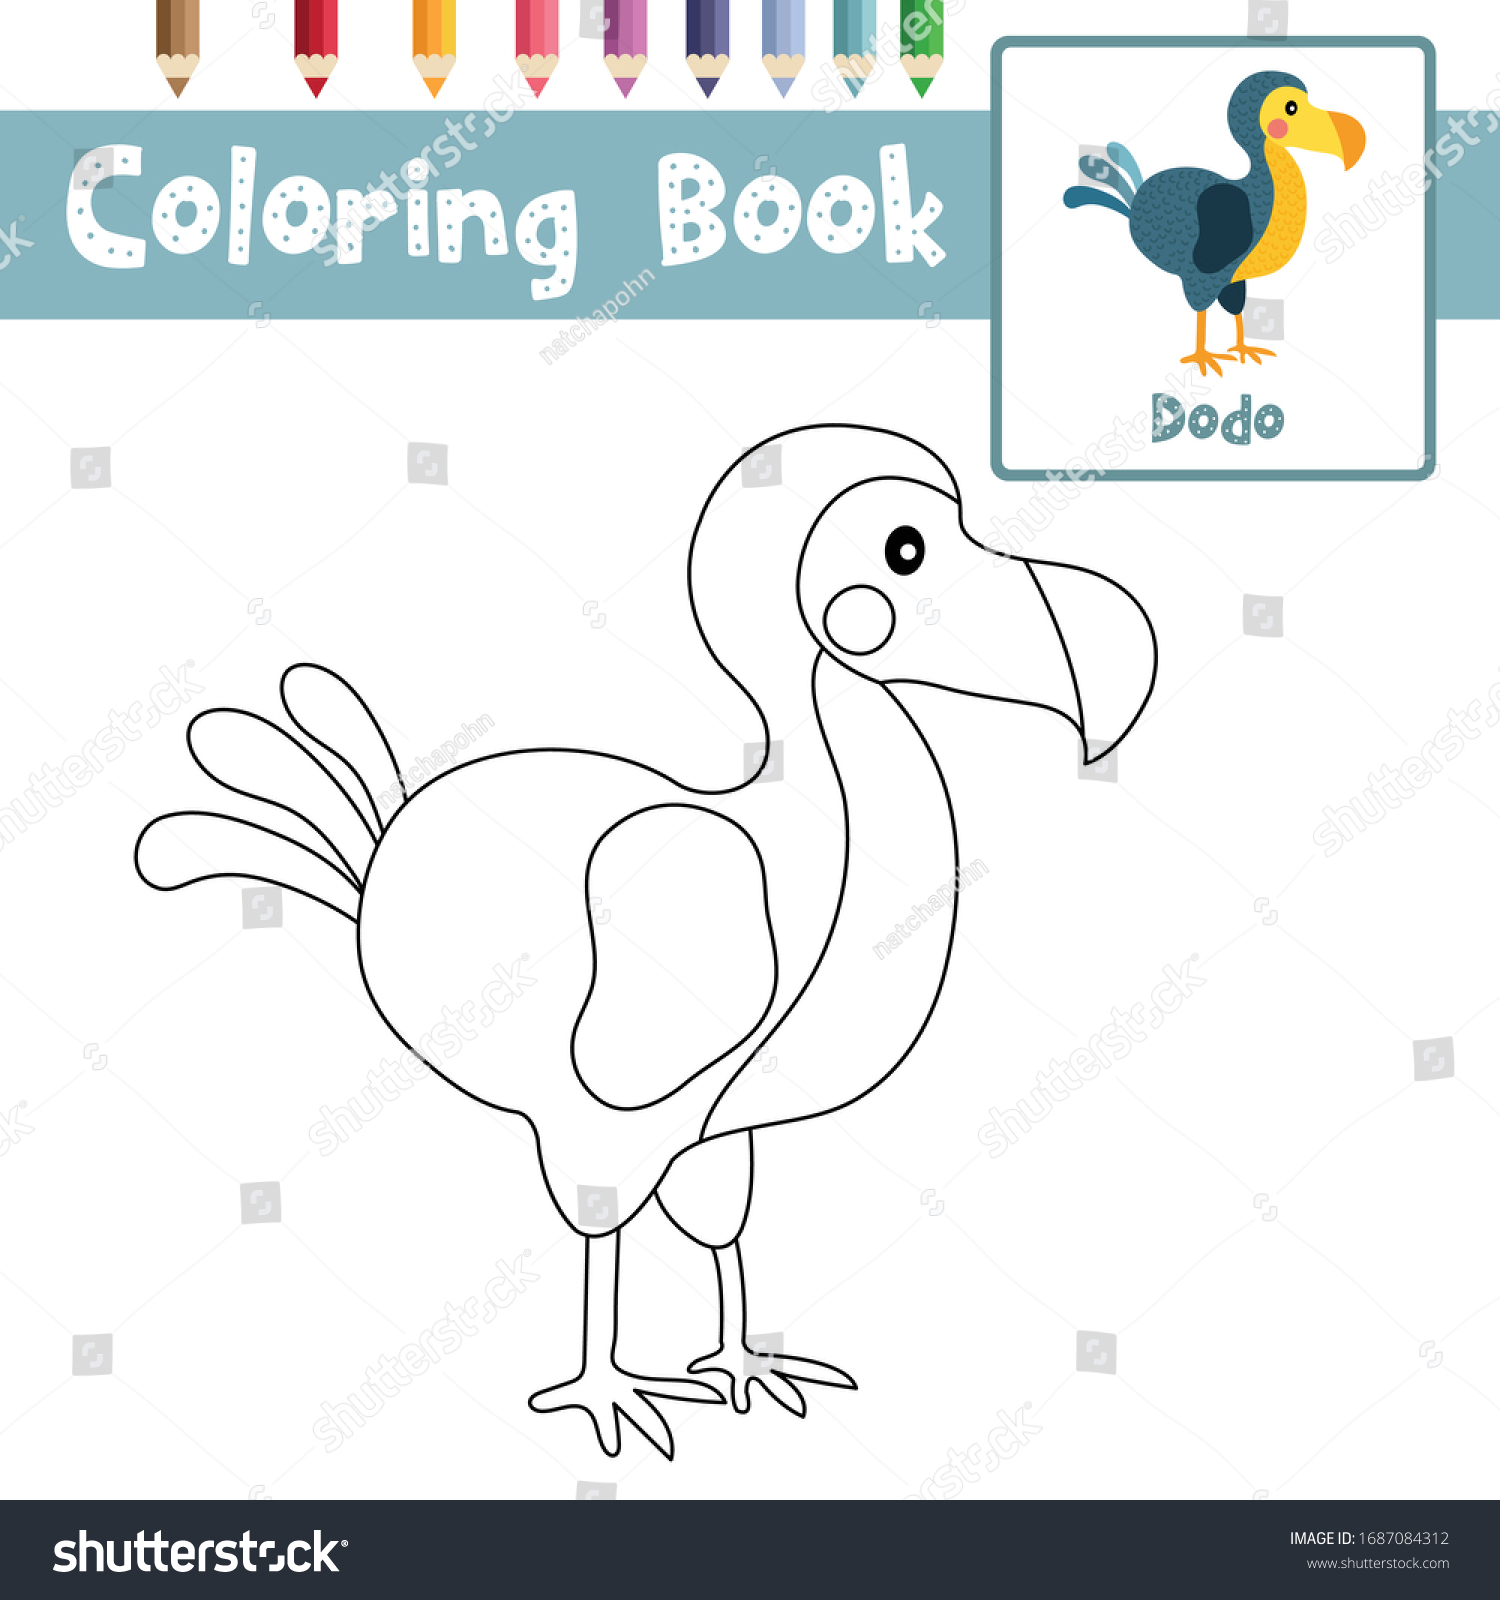 Coloring page dodo bird animals cartoon stock vector royalty free